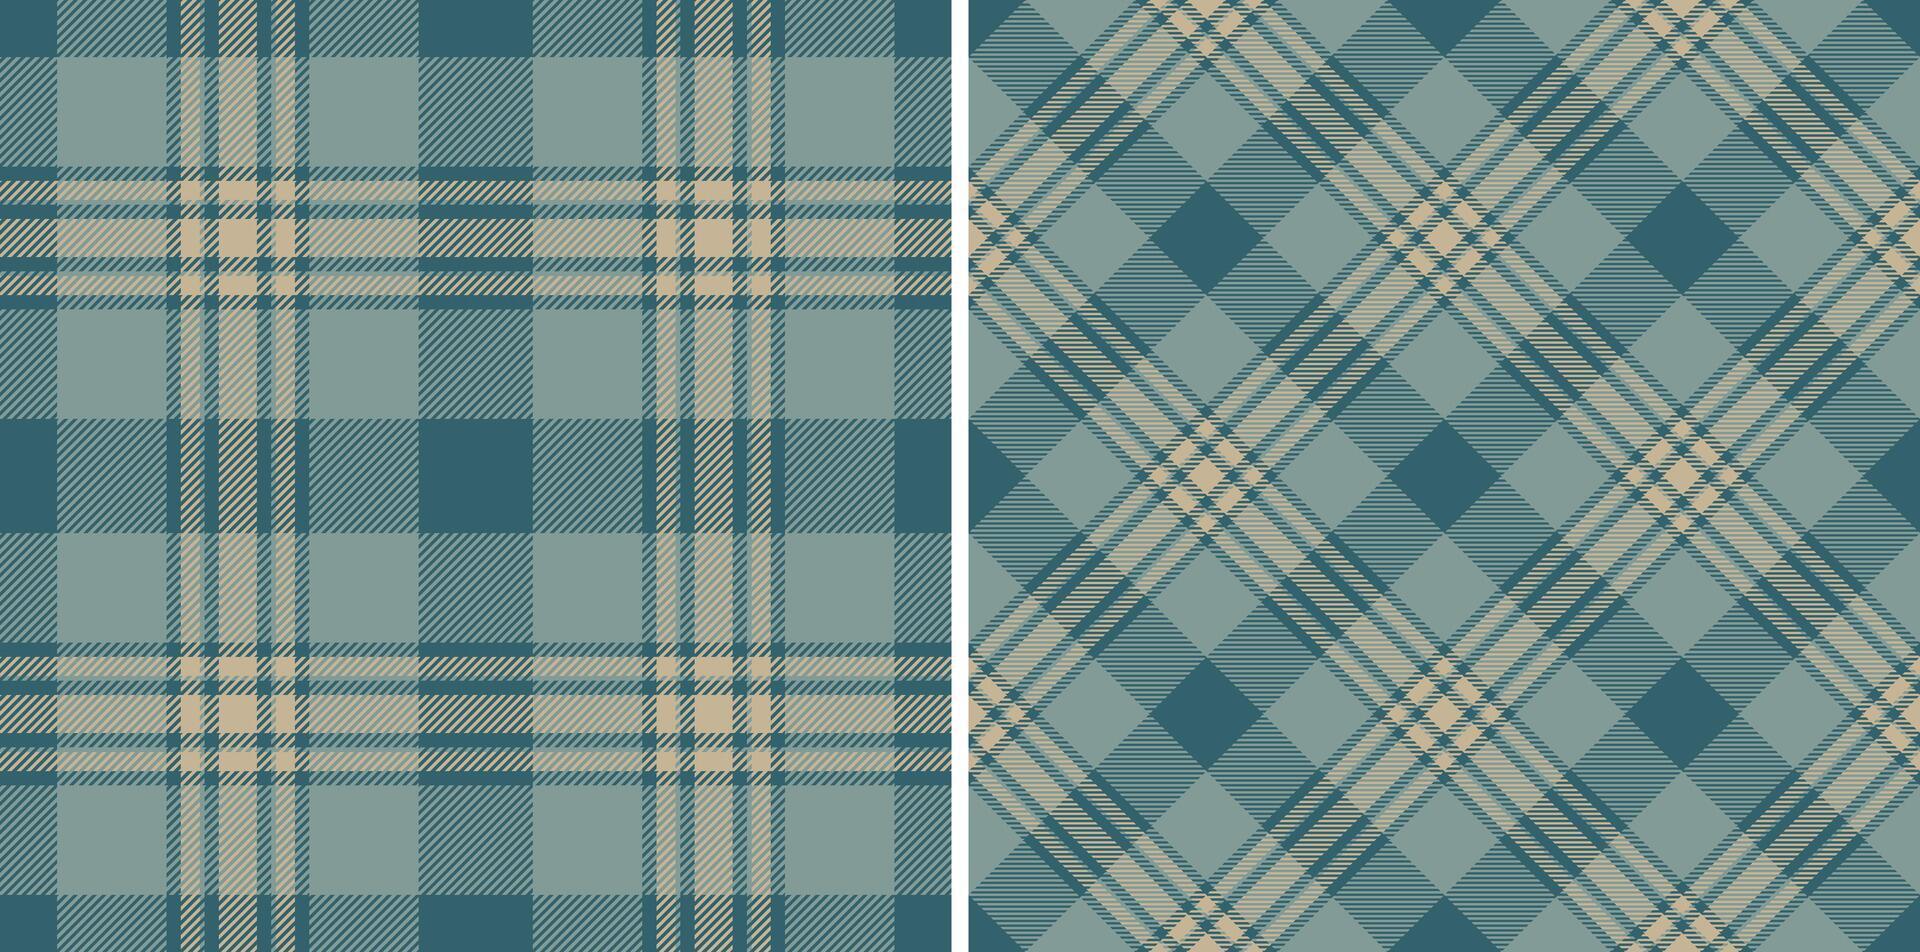 kleding stof controleren van patroon textiel structuur met een Schotse ruit achtergrond plaid naadloos. vector